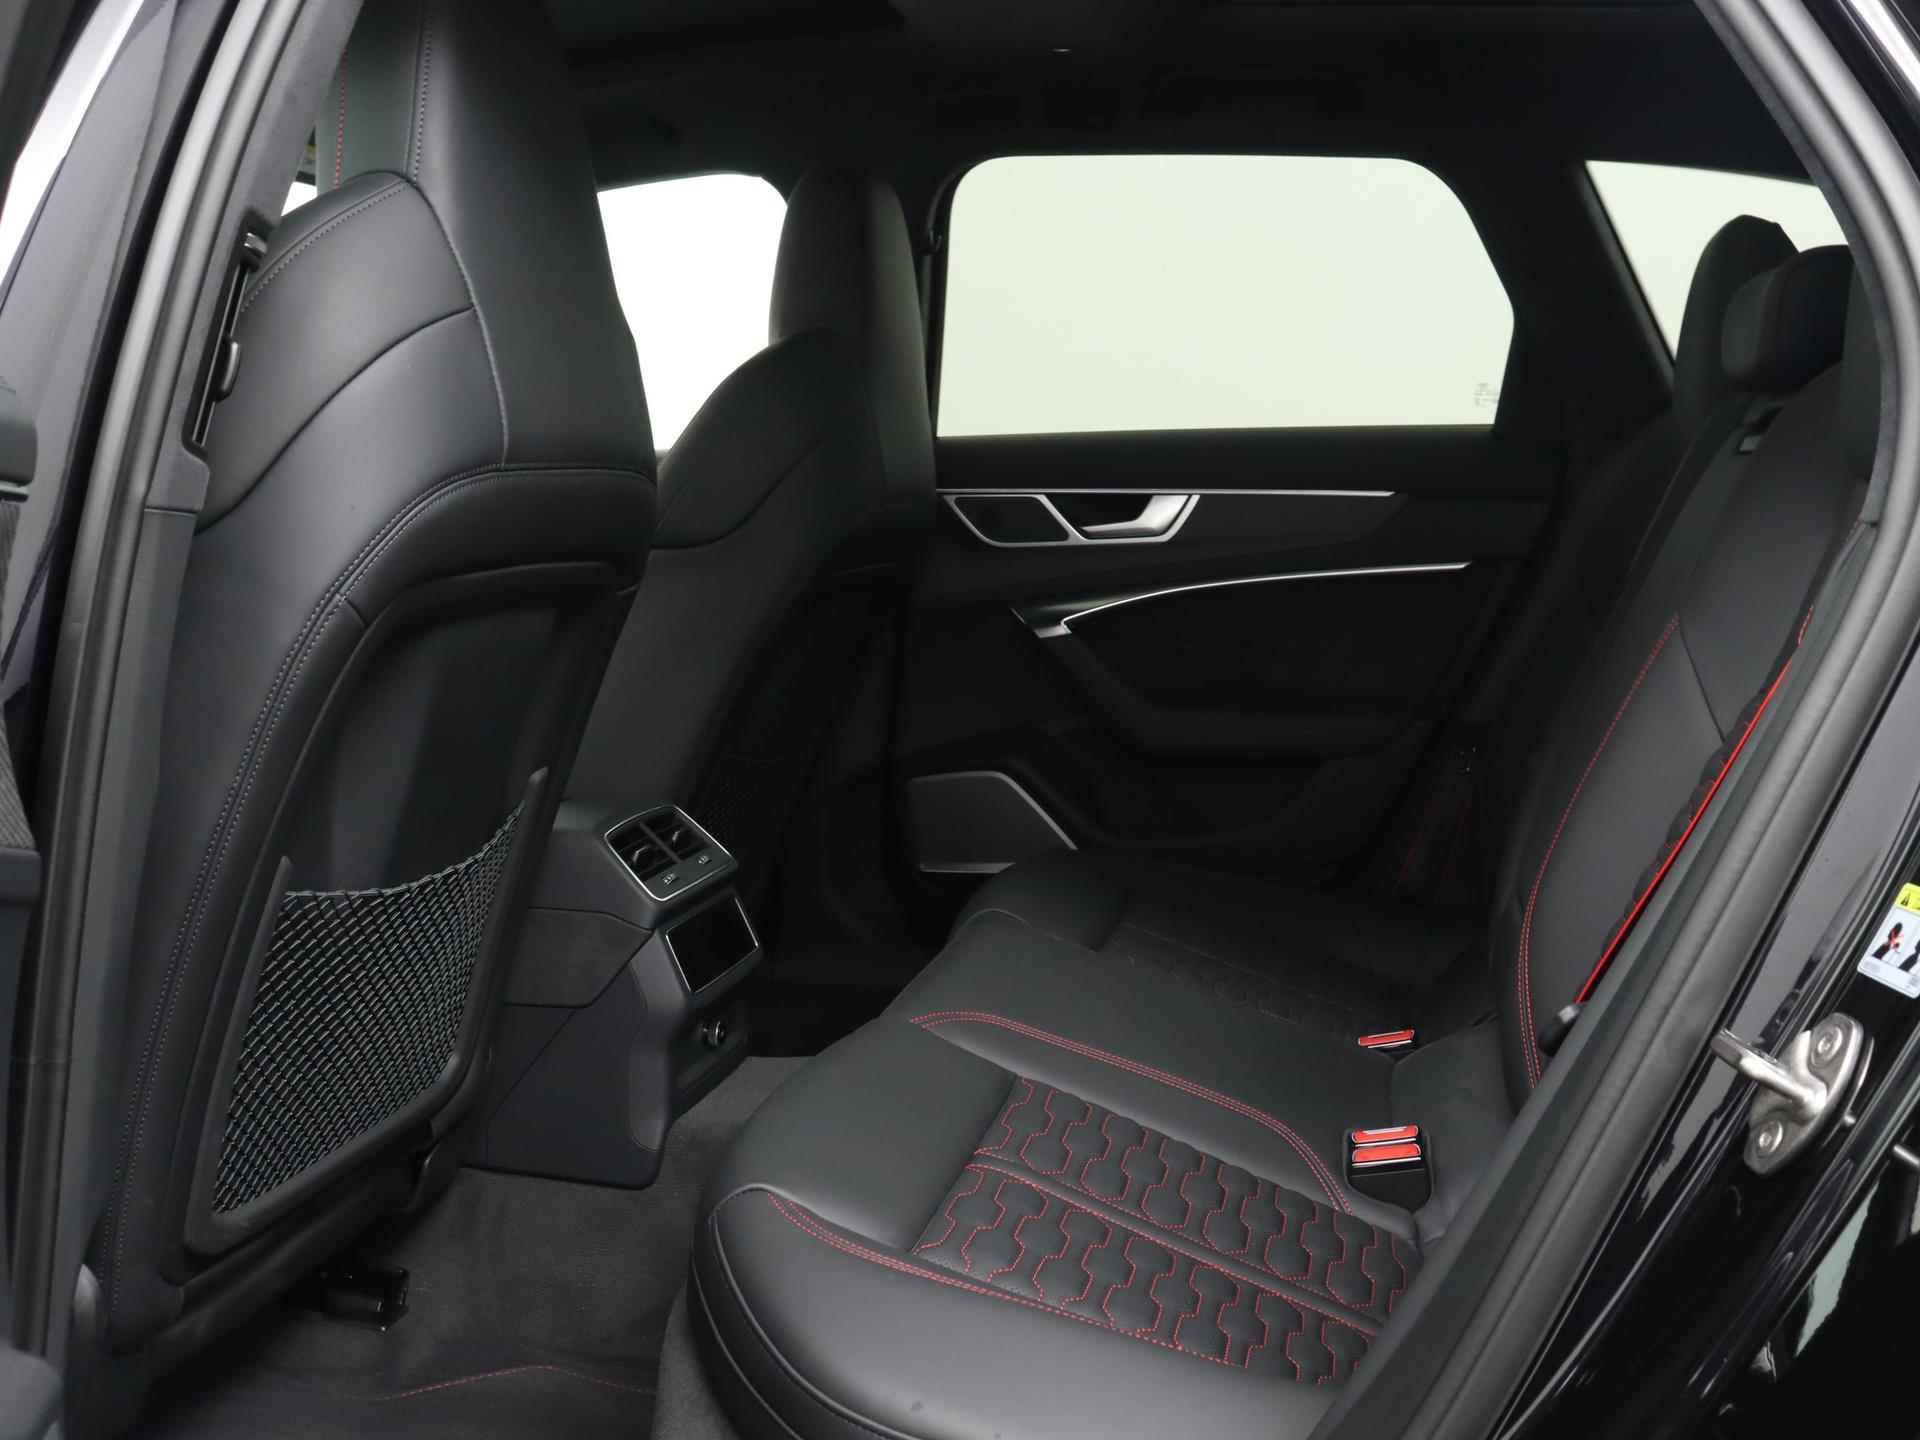 Audi RS 6 Avant TFSI quattro 600 PK | Head-up display | Bang & Olufsen Soundsystem | 22 inch lm velgen | RS Dynamic Pakket Plus | RS Design pakket Rood |Optiekpakket Zwart Plus | Panorama dak | RS Sportuitlaat | Keramische remschijven Rood | RS Sportonderstel Plus | Servosluiting deuren | Nu € 36.129,- ACTIEKORTING! | DIRECT LEVERBAAR! | - 18/35